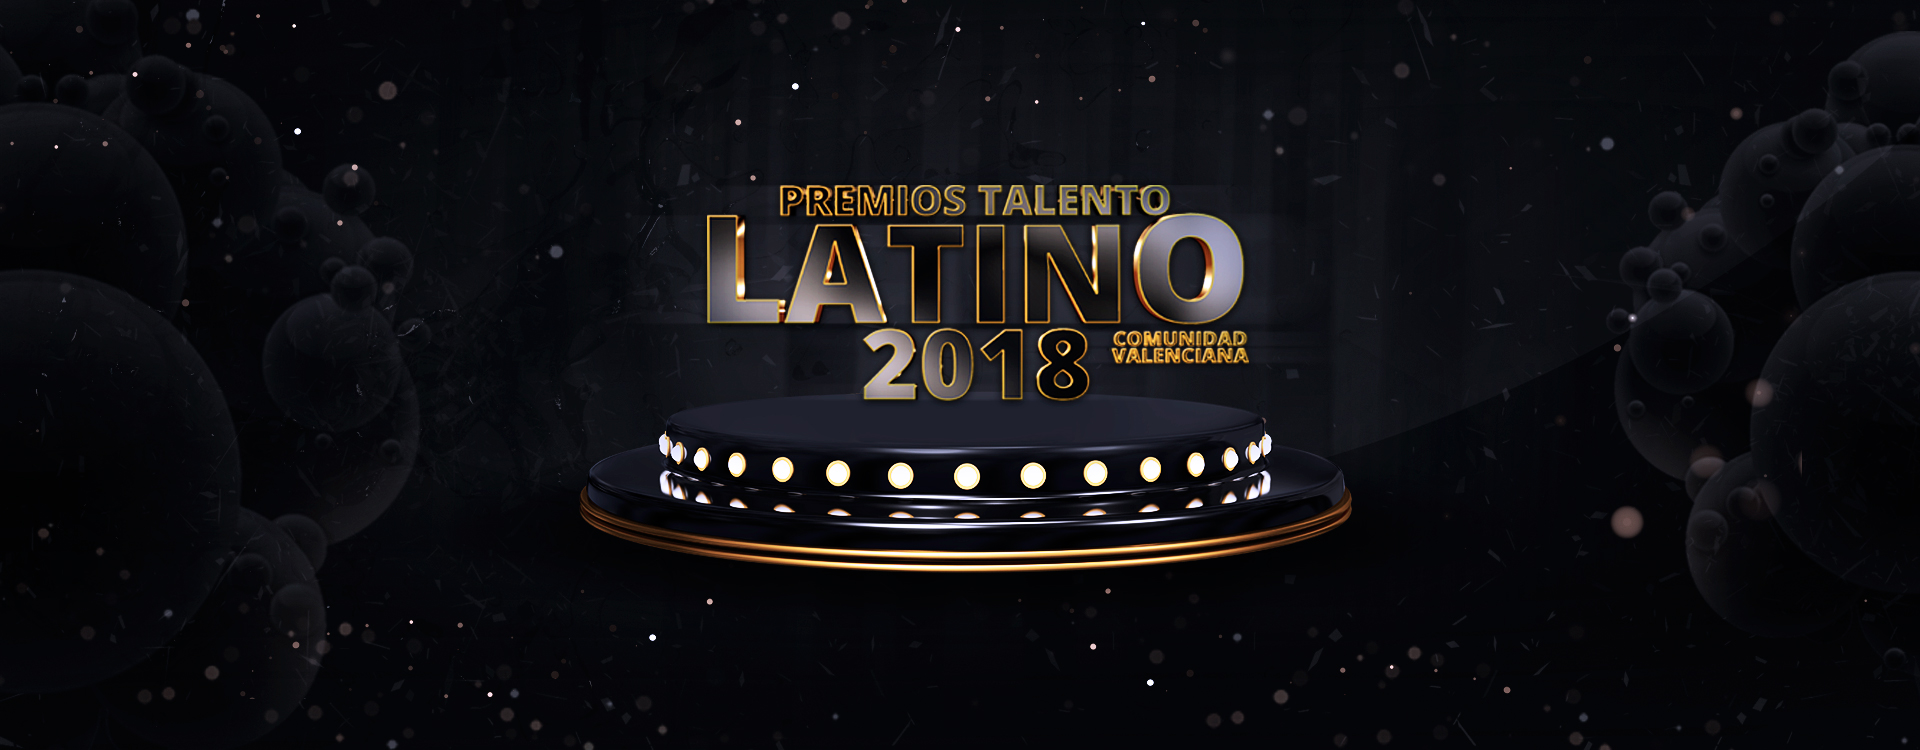 Premios Talento Latino 2018